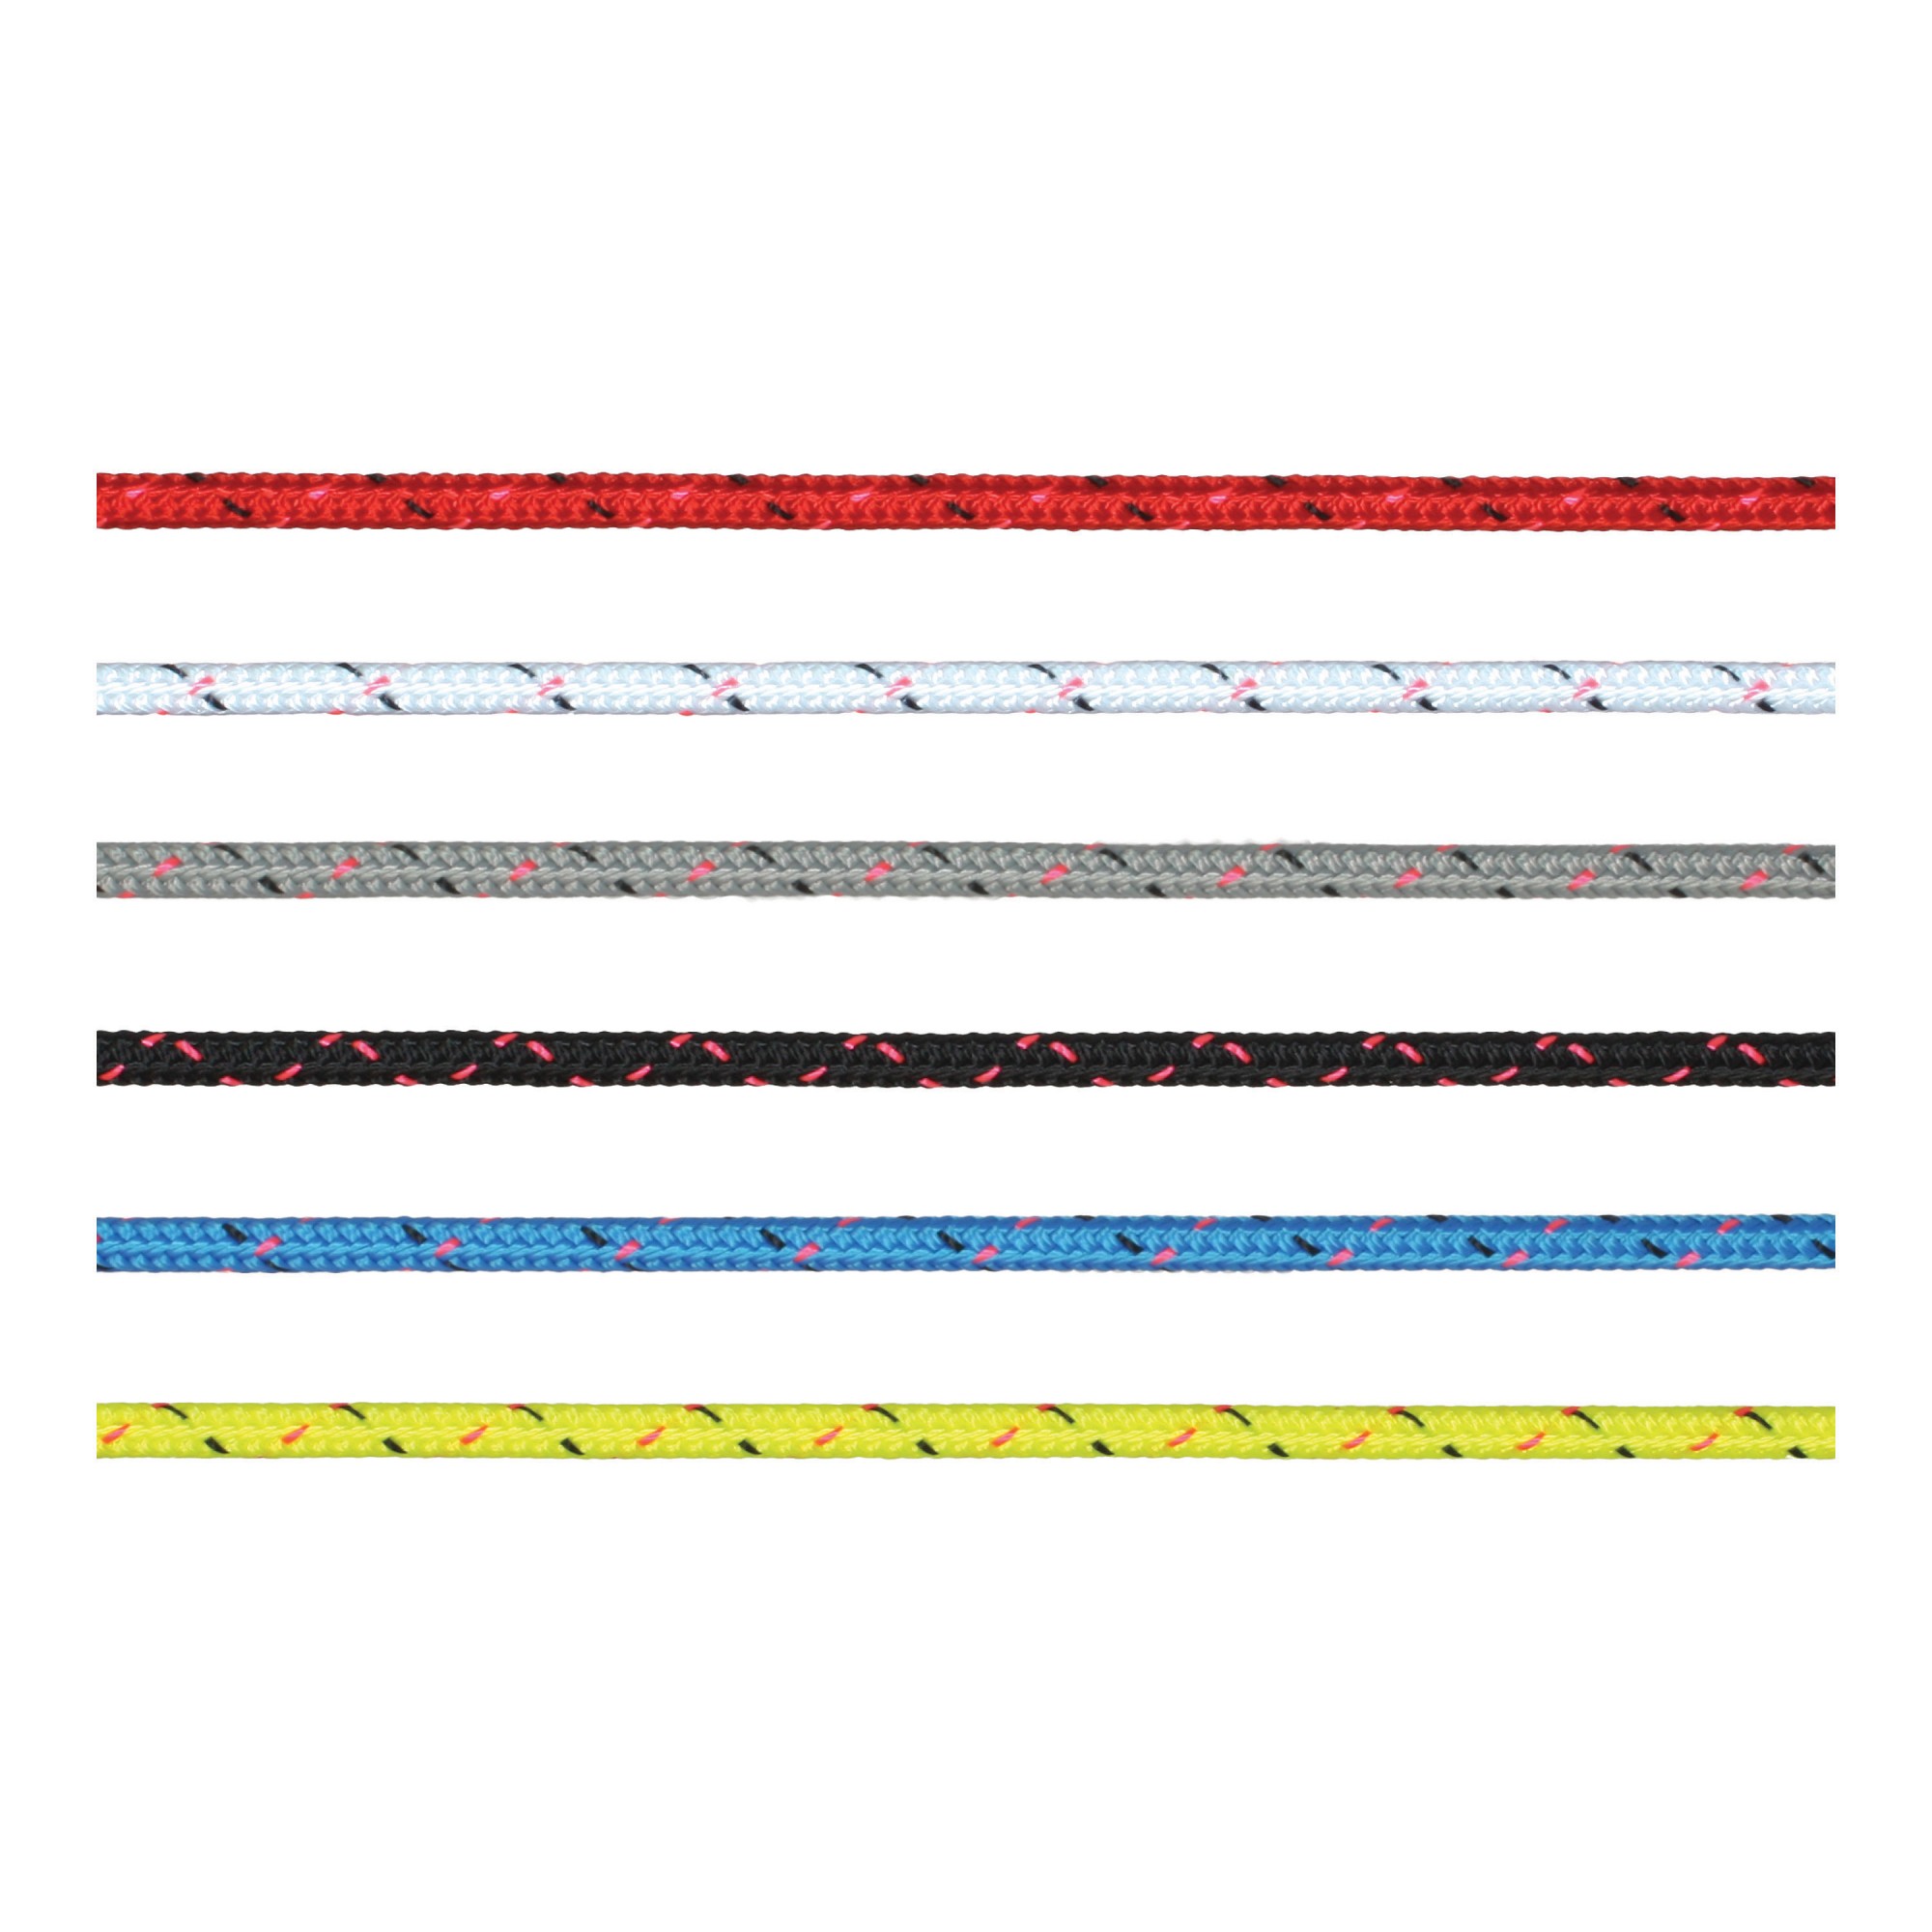 Трос Marlow Excel Pro из полиэстера красного цвета 200 м диаметр 4 мм, Osculati 06.465.04RO